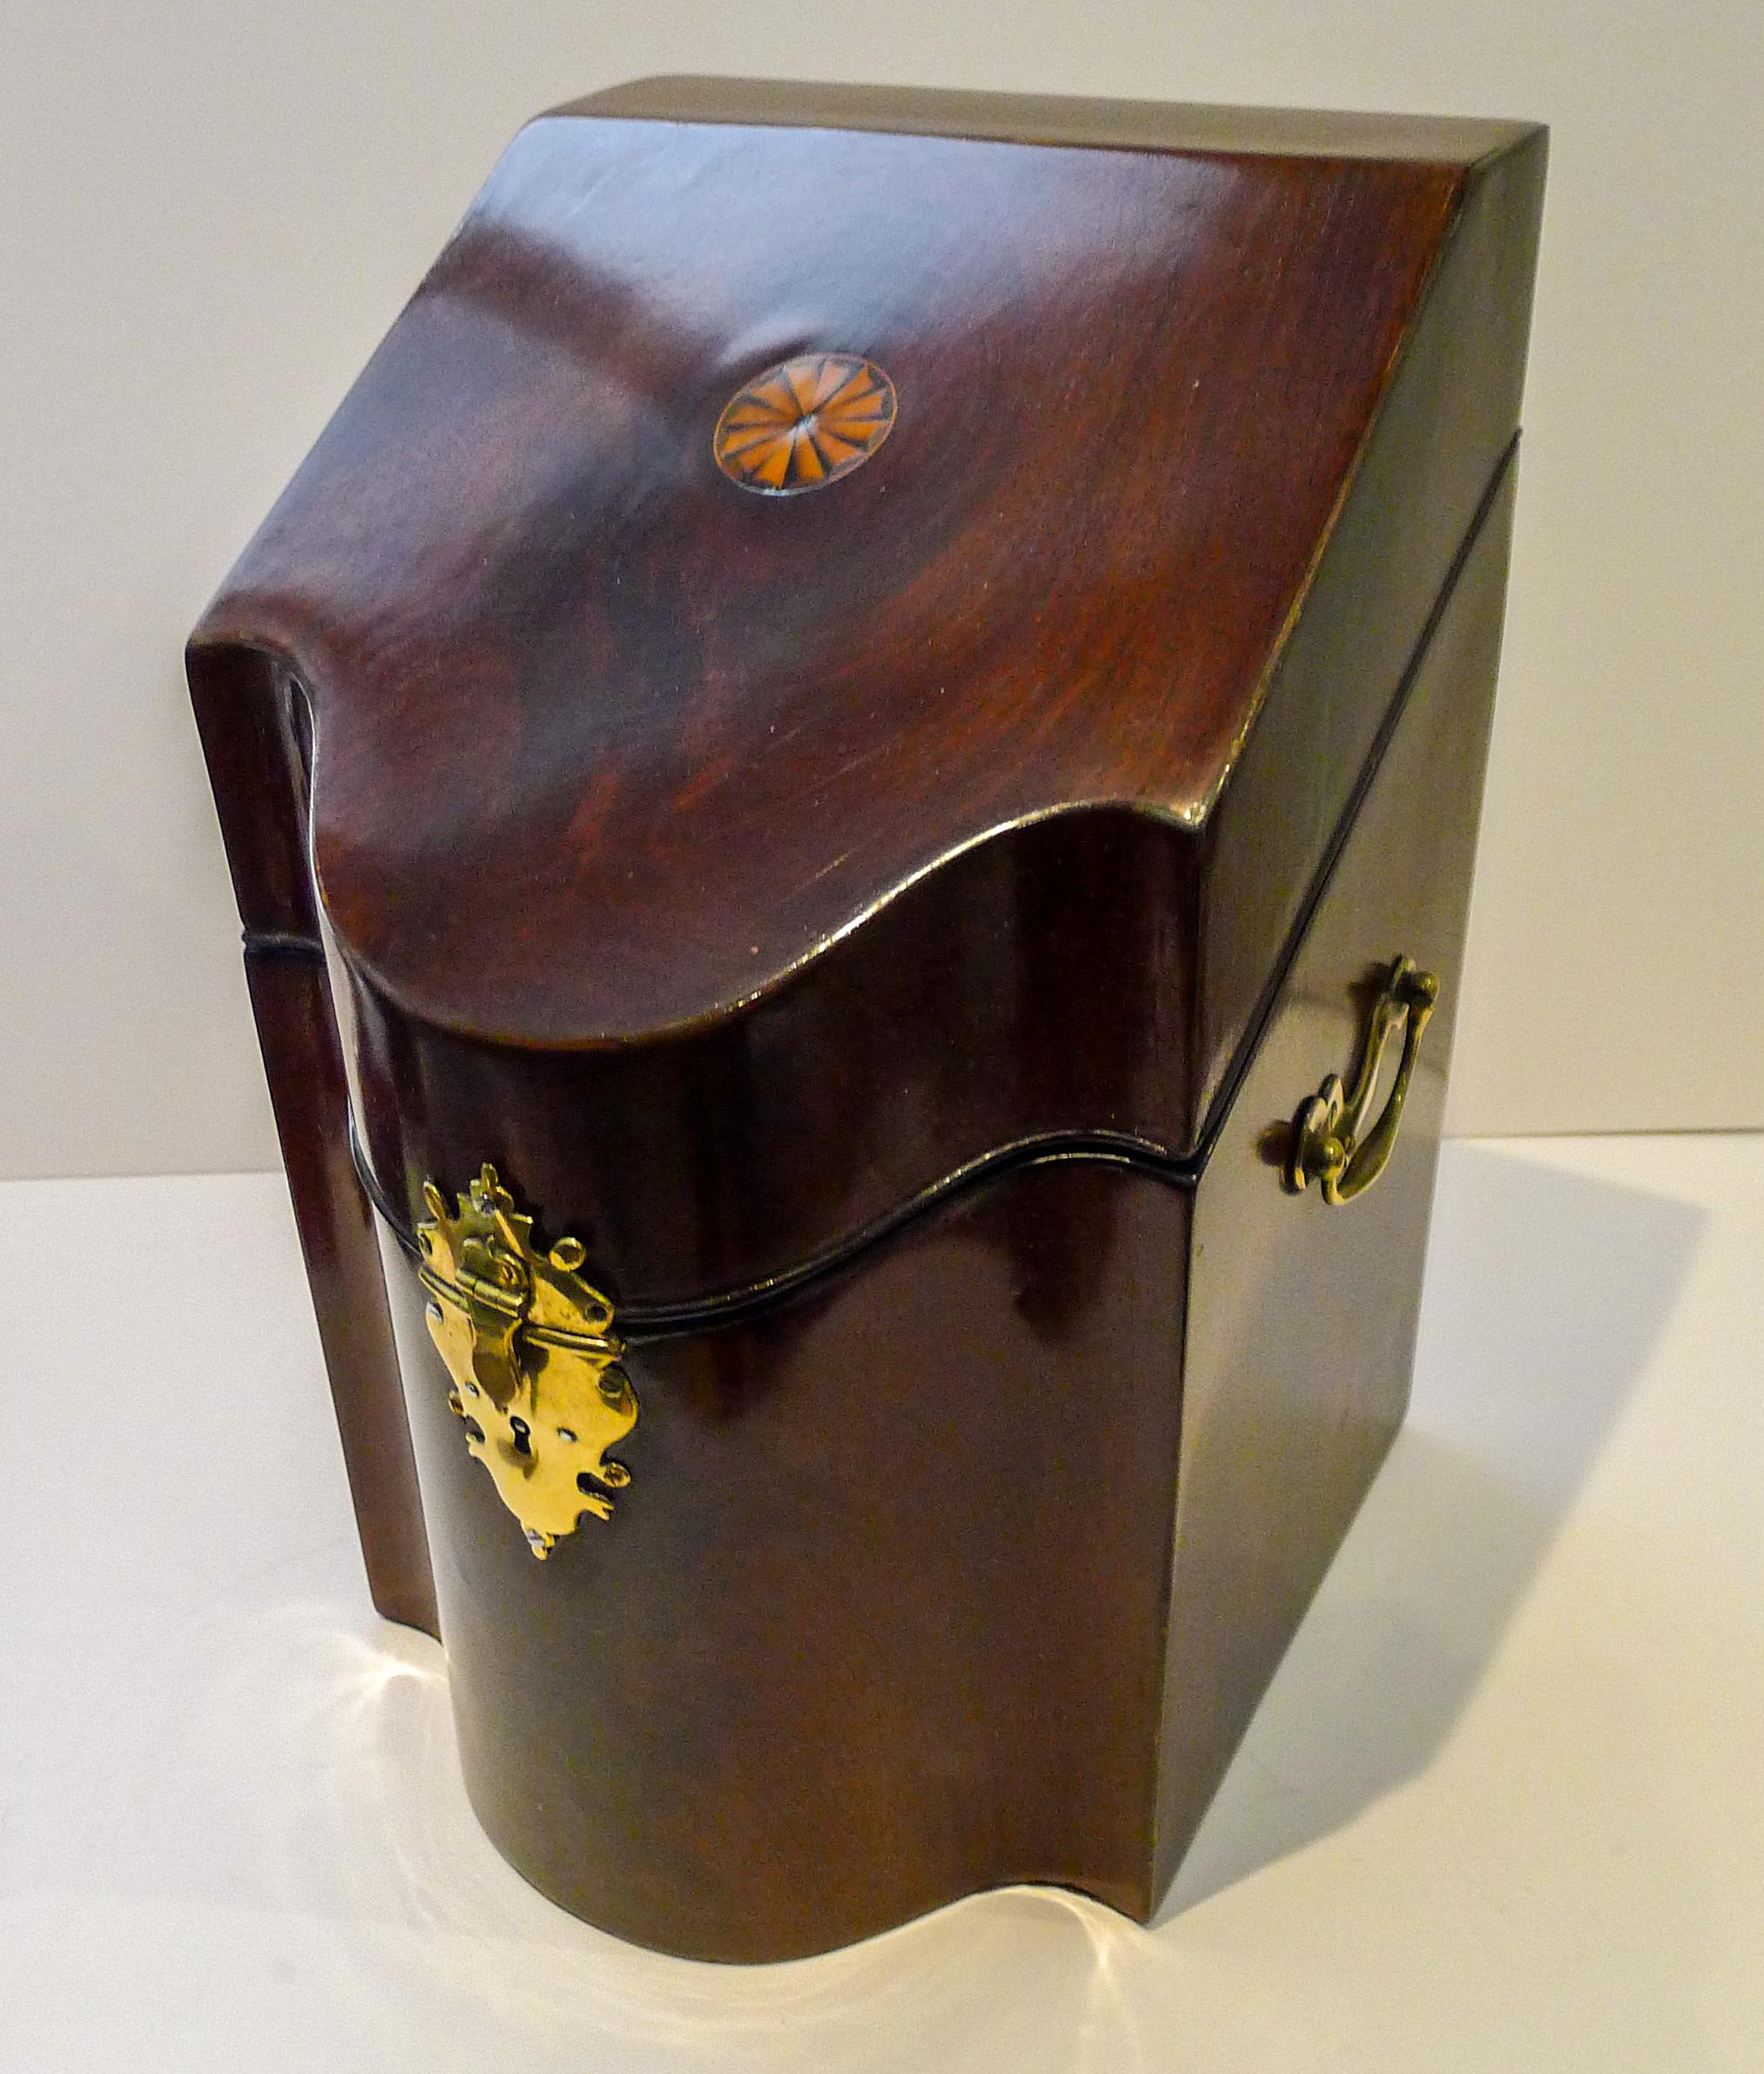 Eine hübsche englische Messerbox aus georgianischem Mahagoni, die später in eine brauchbarere Schreibwarenbox umgewandelt wurde.

Die Messingbeschläge sind alle original und das Schloss auf der Vorderseite kommt mit einem funktionierenden